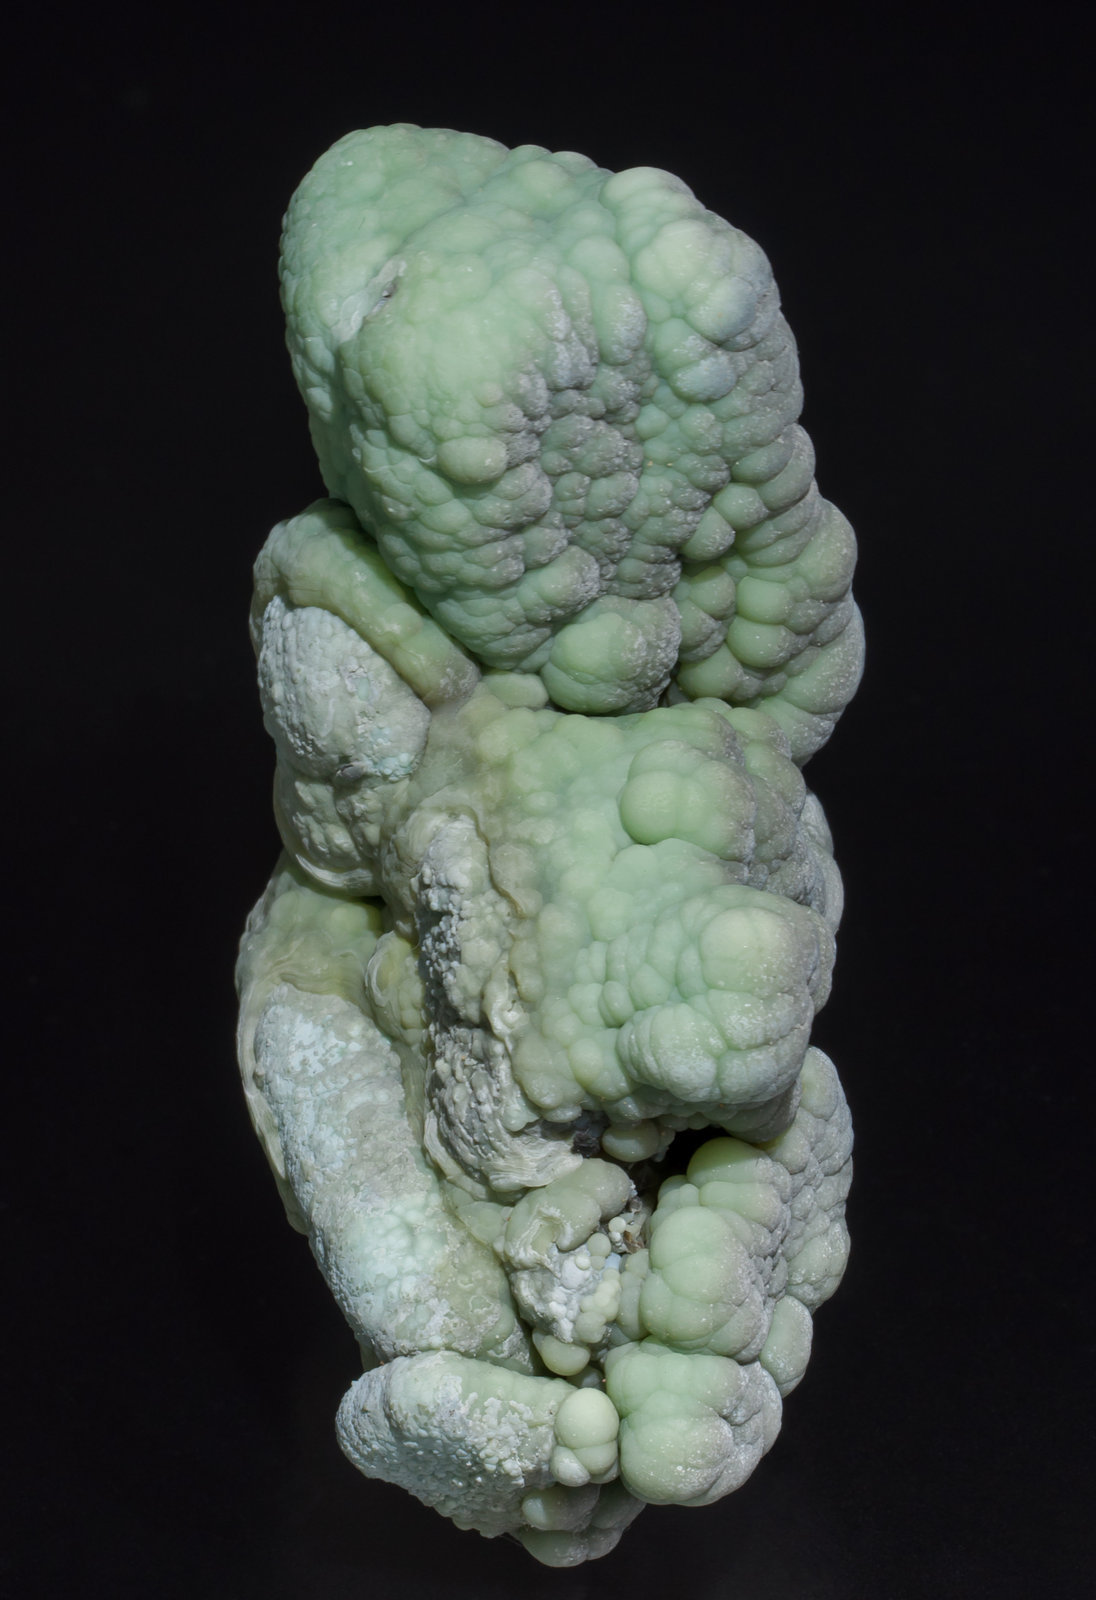 specimens/s_imagesAB4/Aragonite-EX58AB4f.jpg